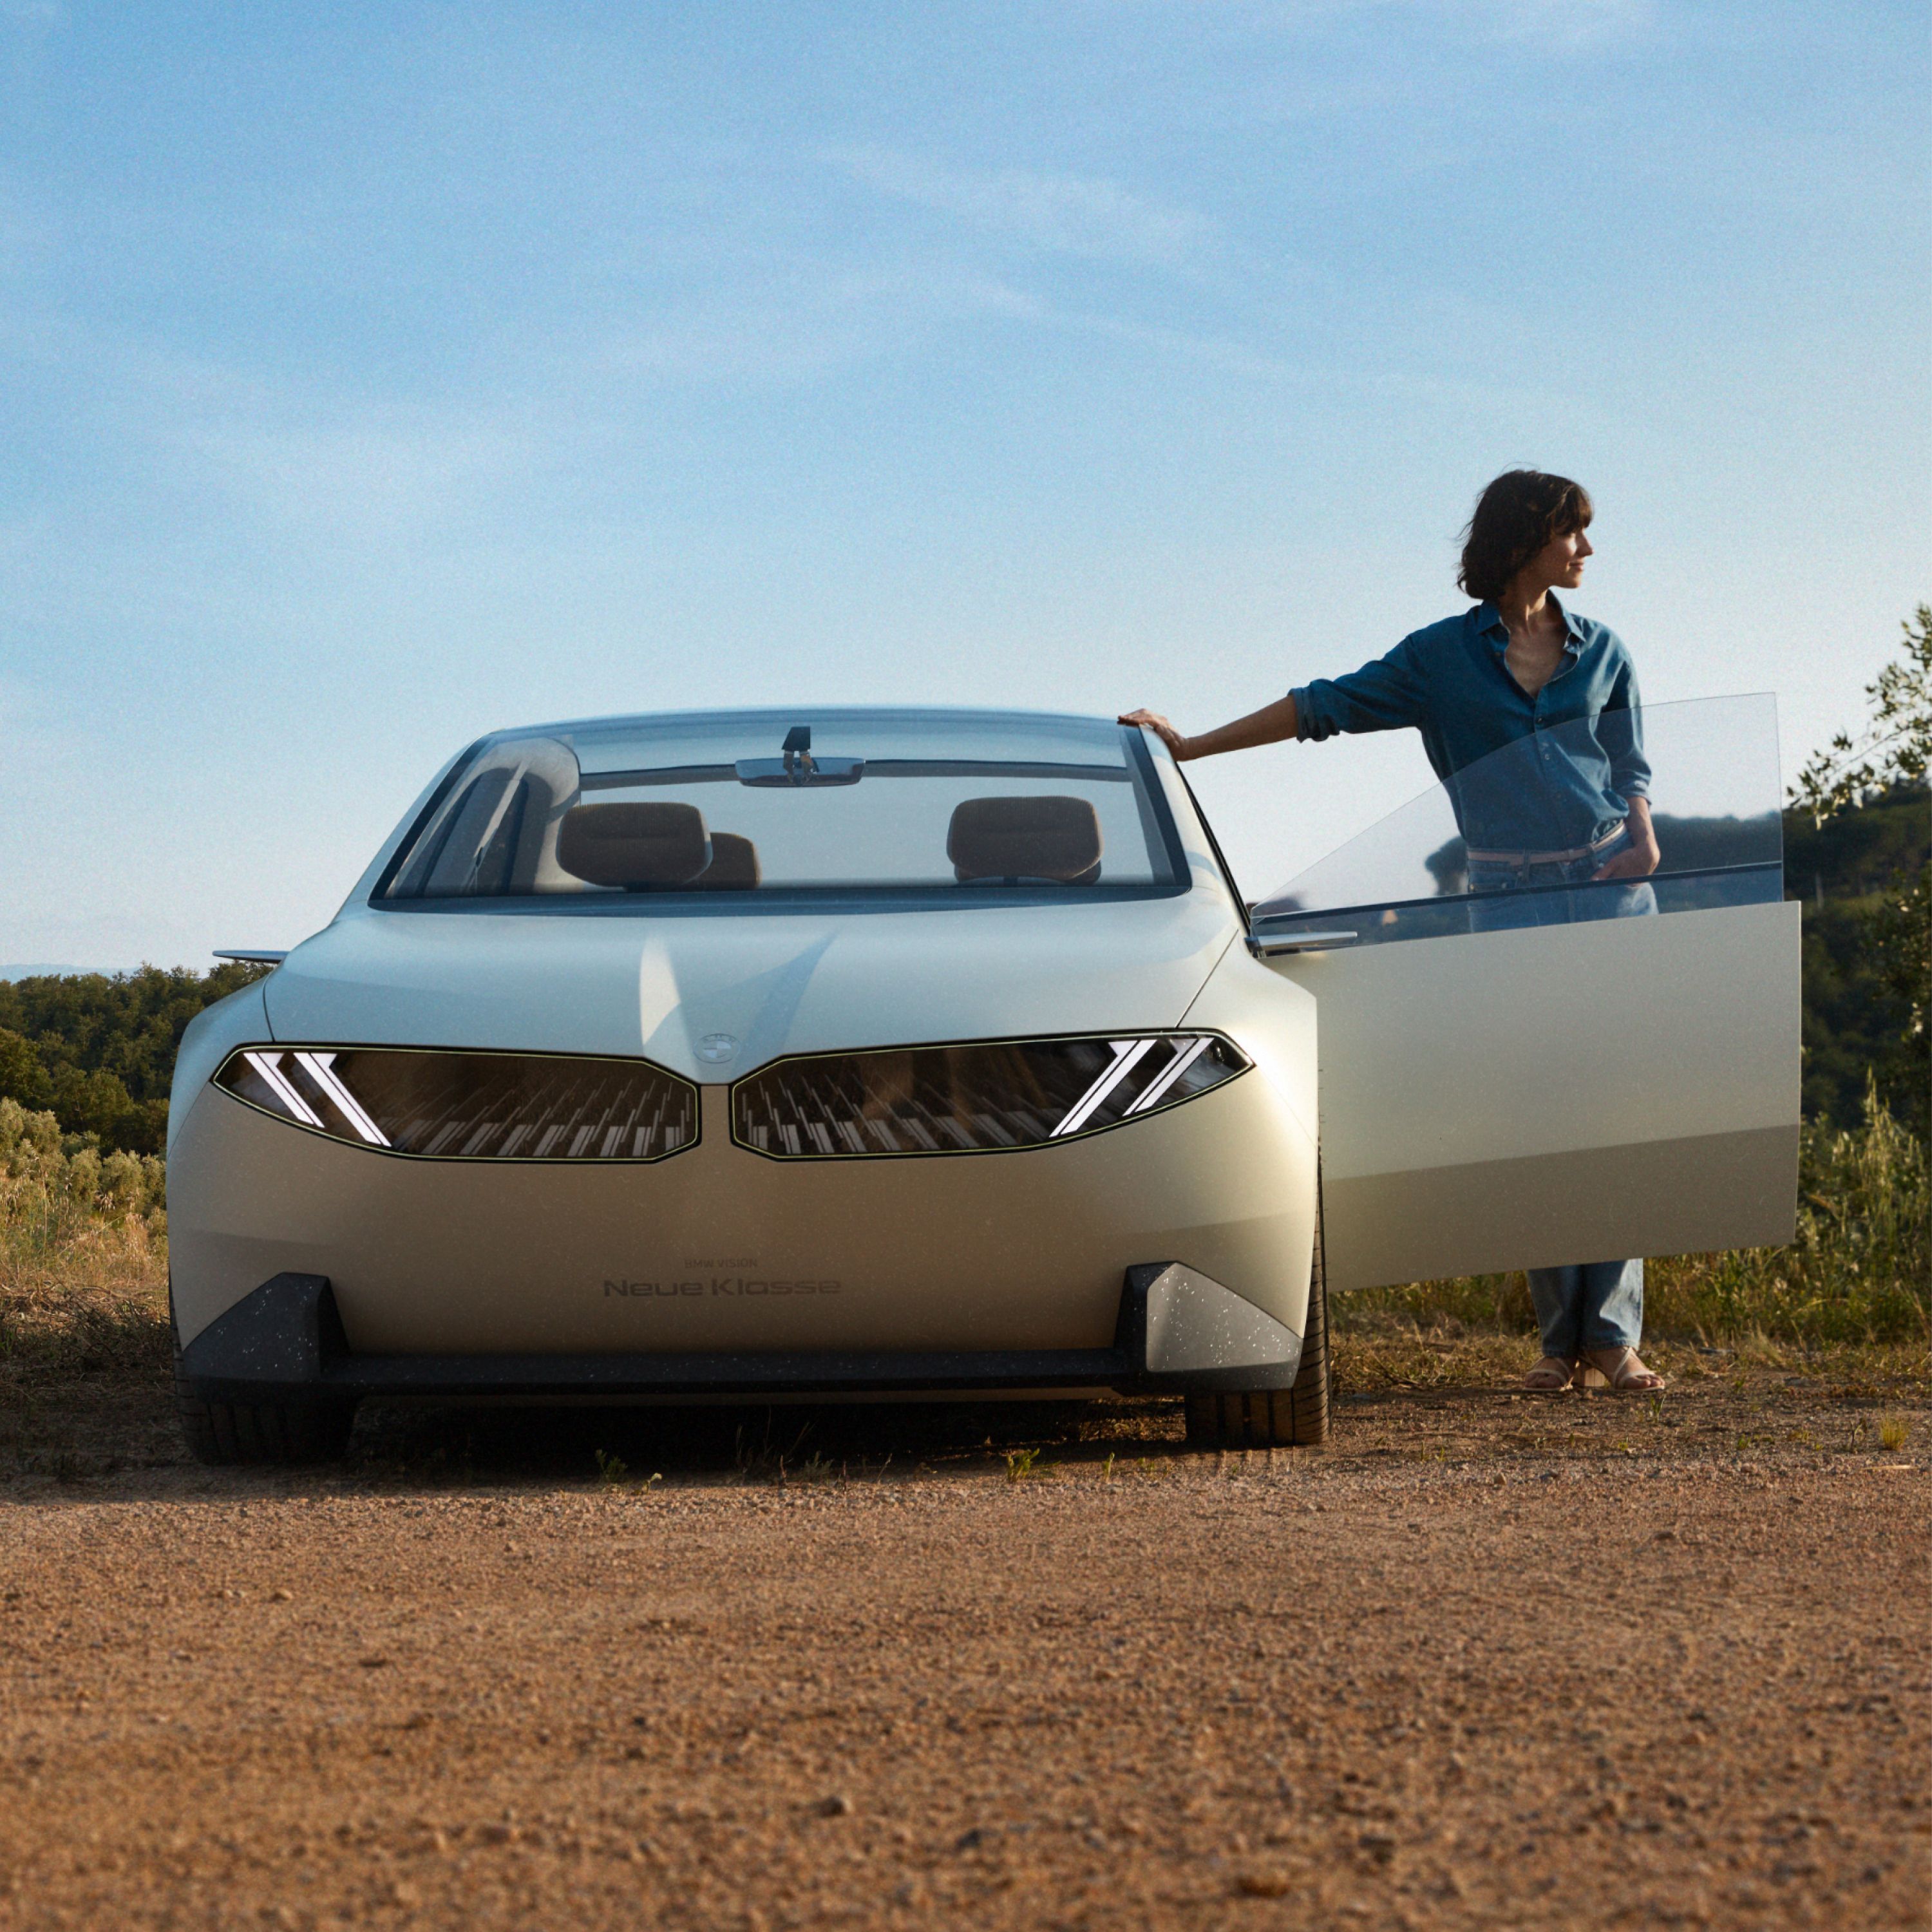 BMW Vision Neue Klasse Konceptno vozilo 2023, vanjština, pogled sprijeda, parkiran u pustinji, otvorena vrata, sa ženom